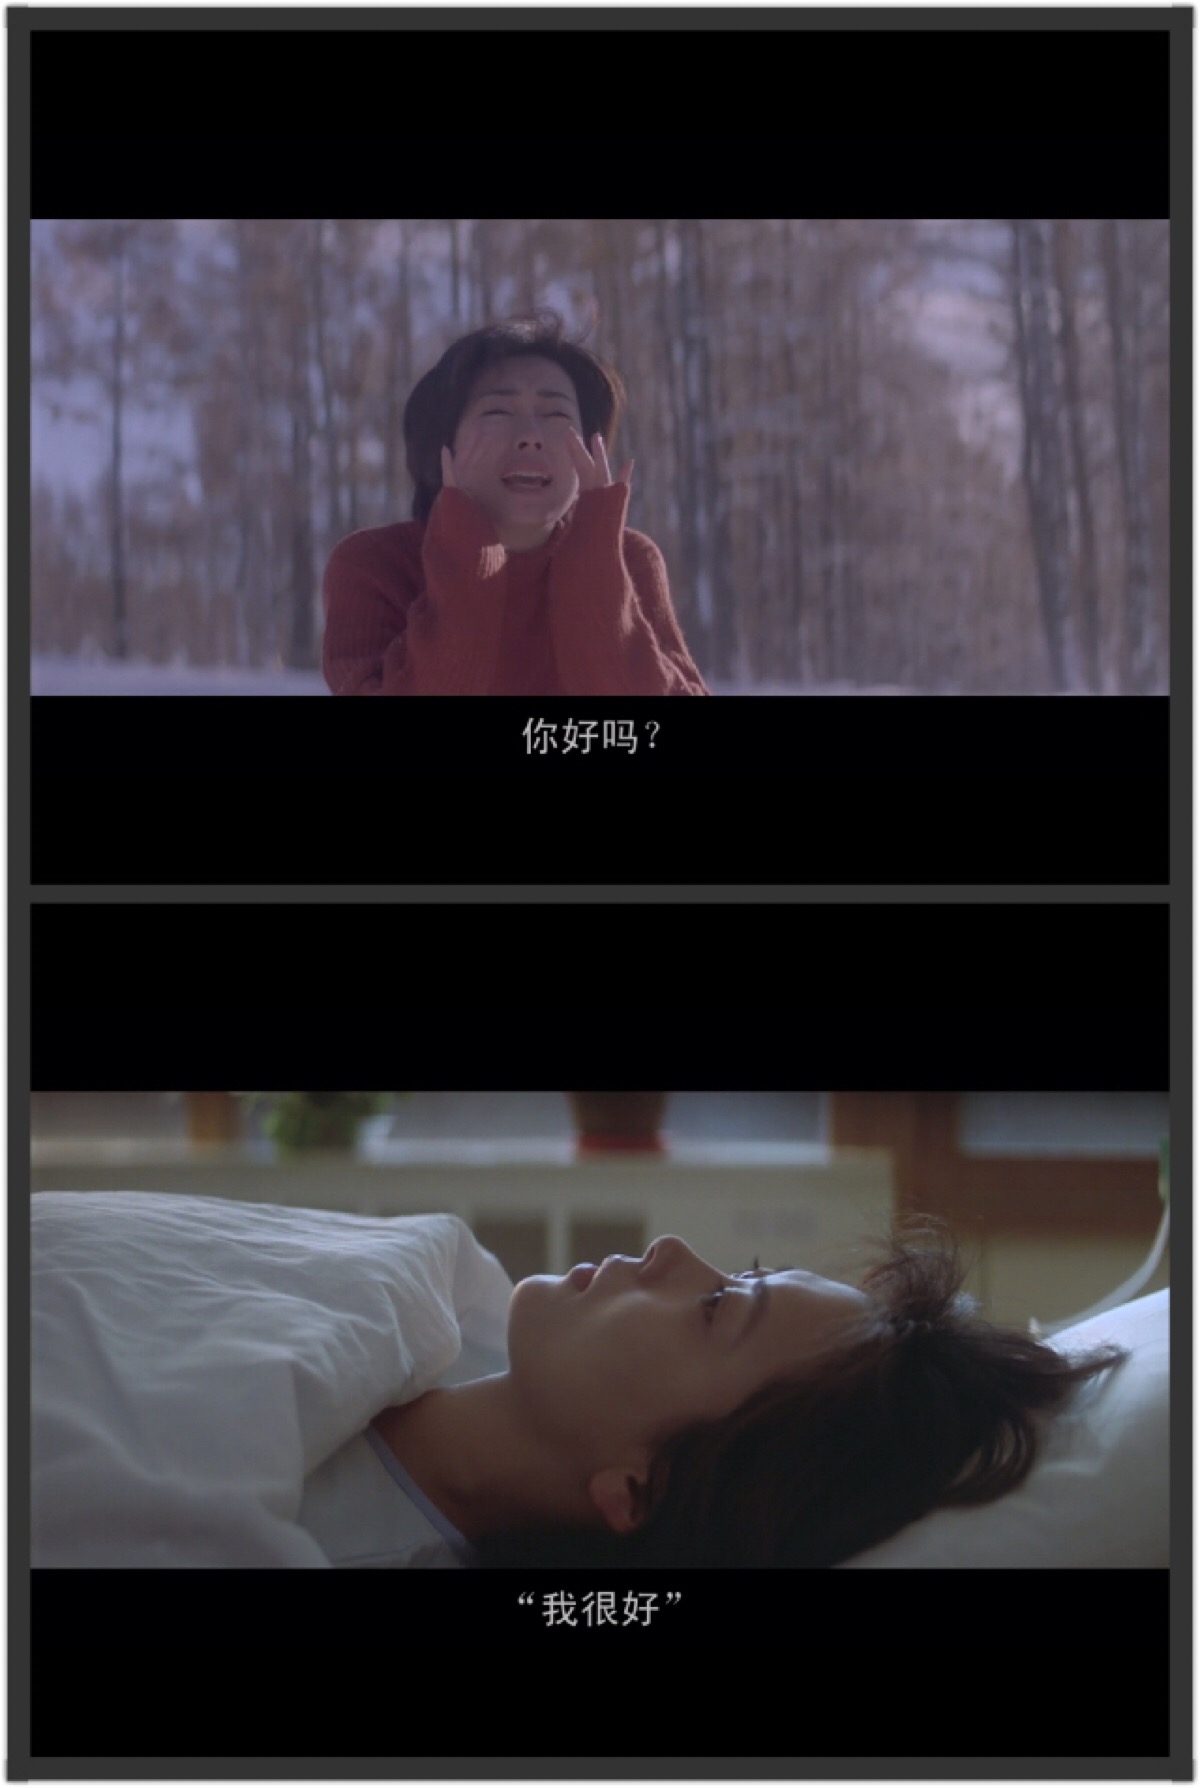 《情书》根据岩井俊二的同名书改编的纯爱电影,1995年上映,就算相隔20